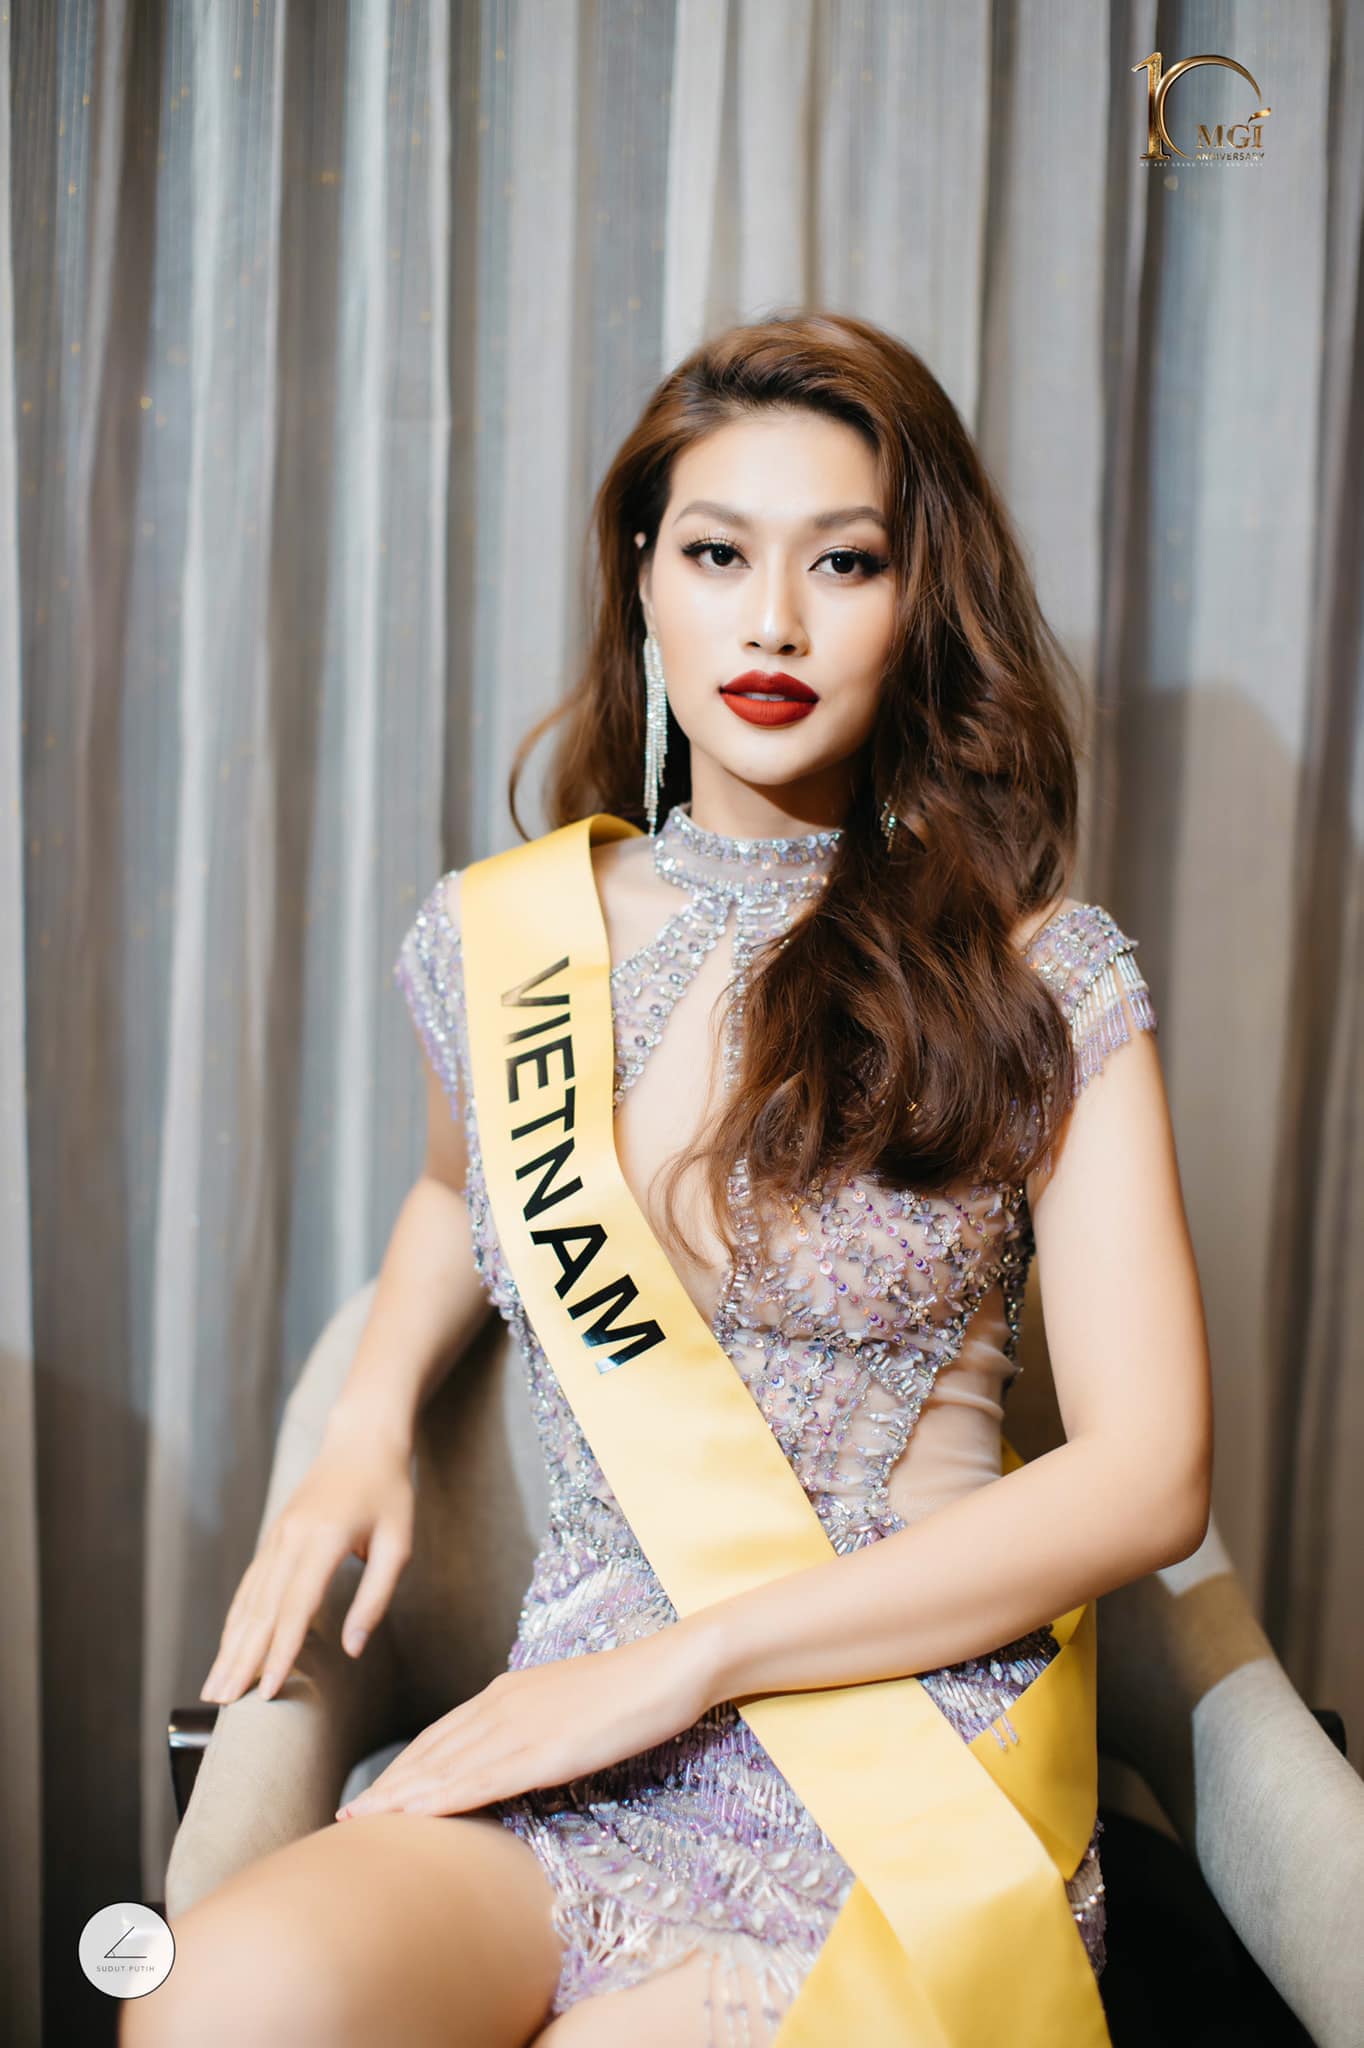 Lịch thi chung kết Miss Grand International 2022 của Đoàn Thiên Ân diễn ra ở đâu, khi nào? - Ảnh 5.